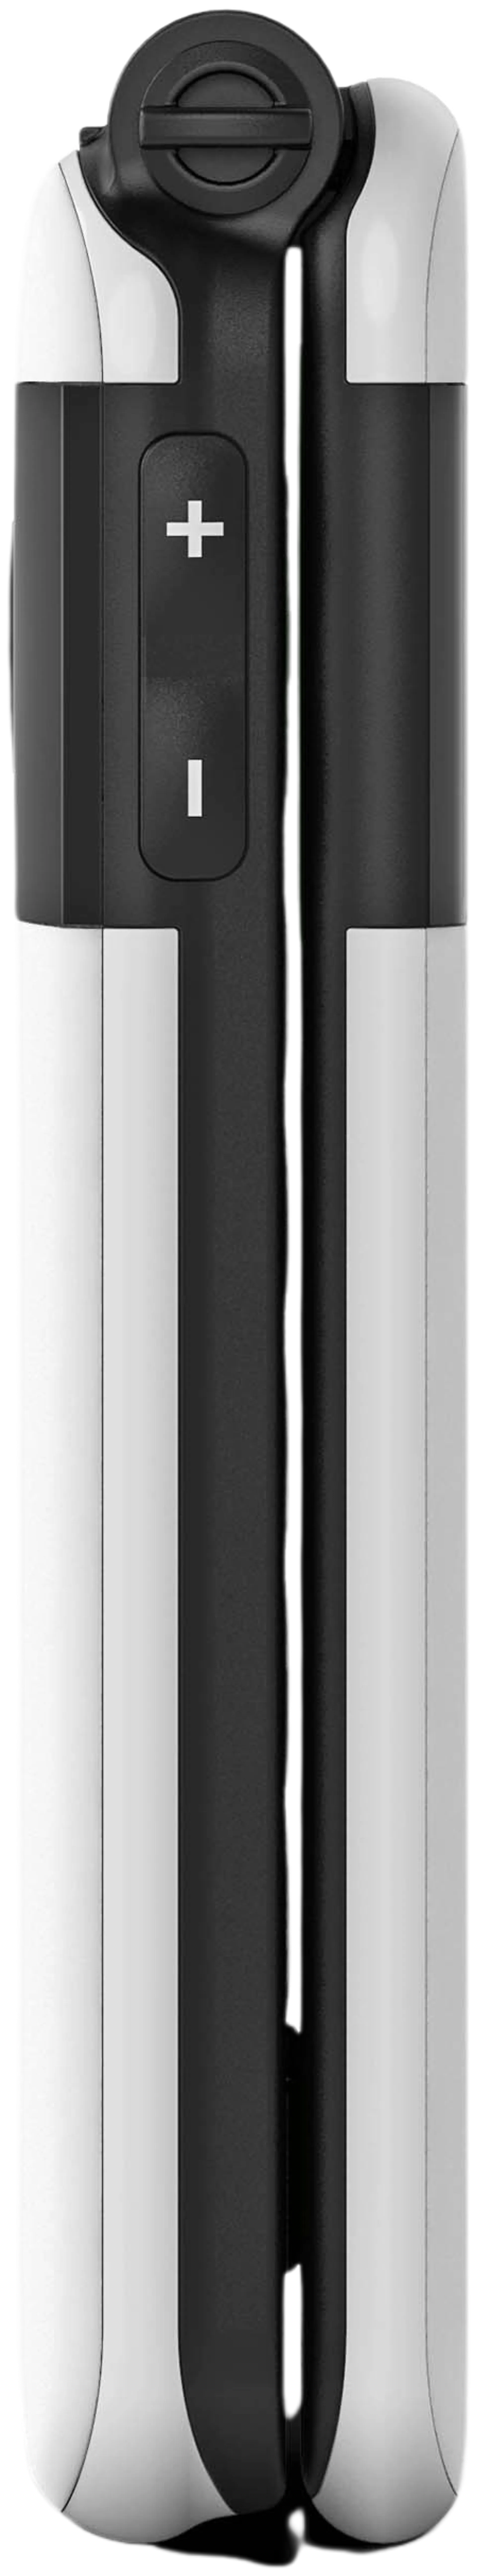 Emporia Simplicity Glam 4G puhelin, valkoinen - 8